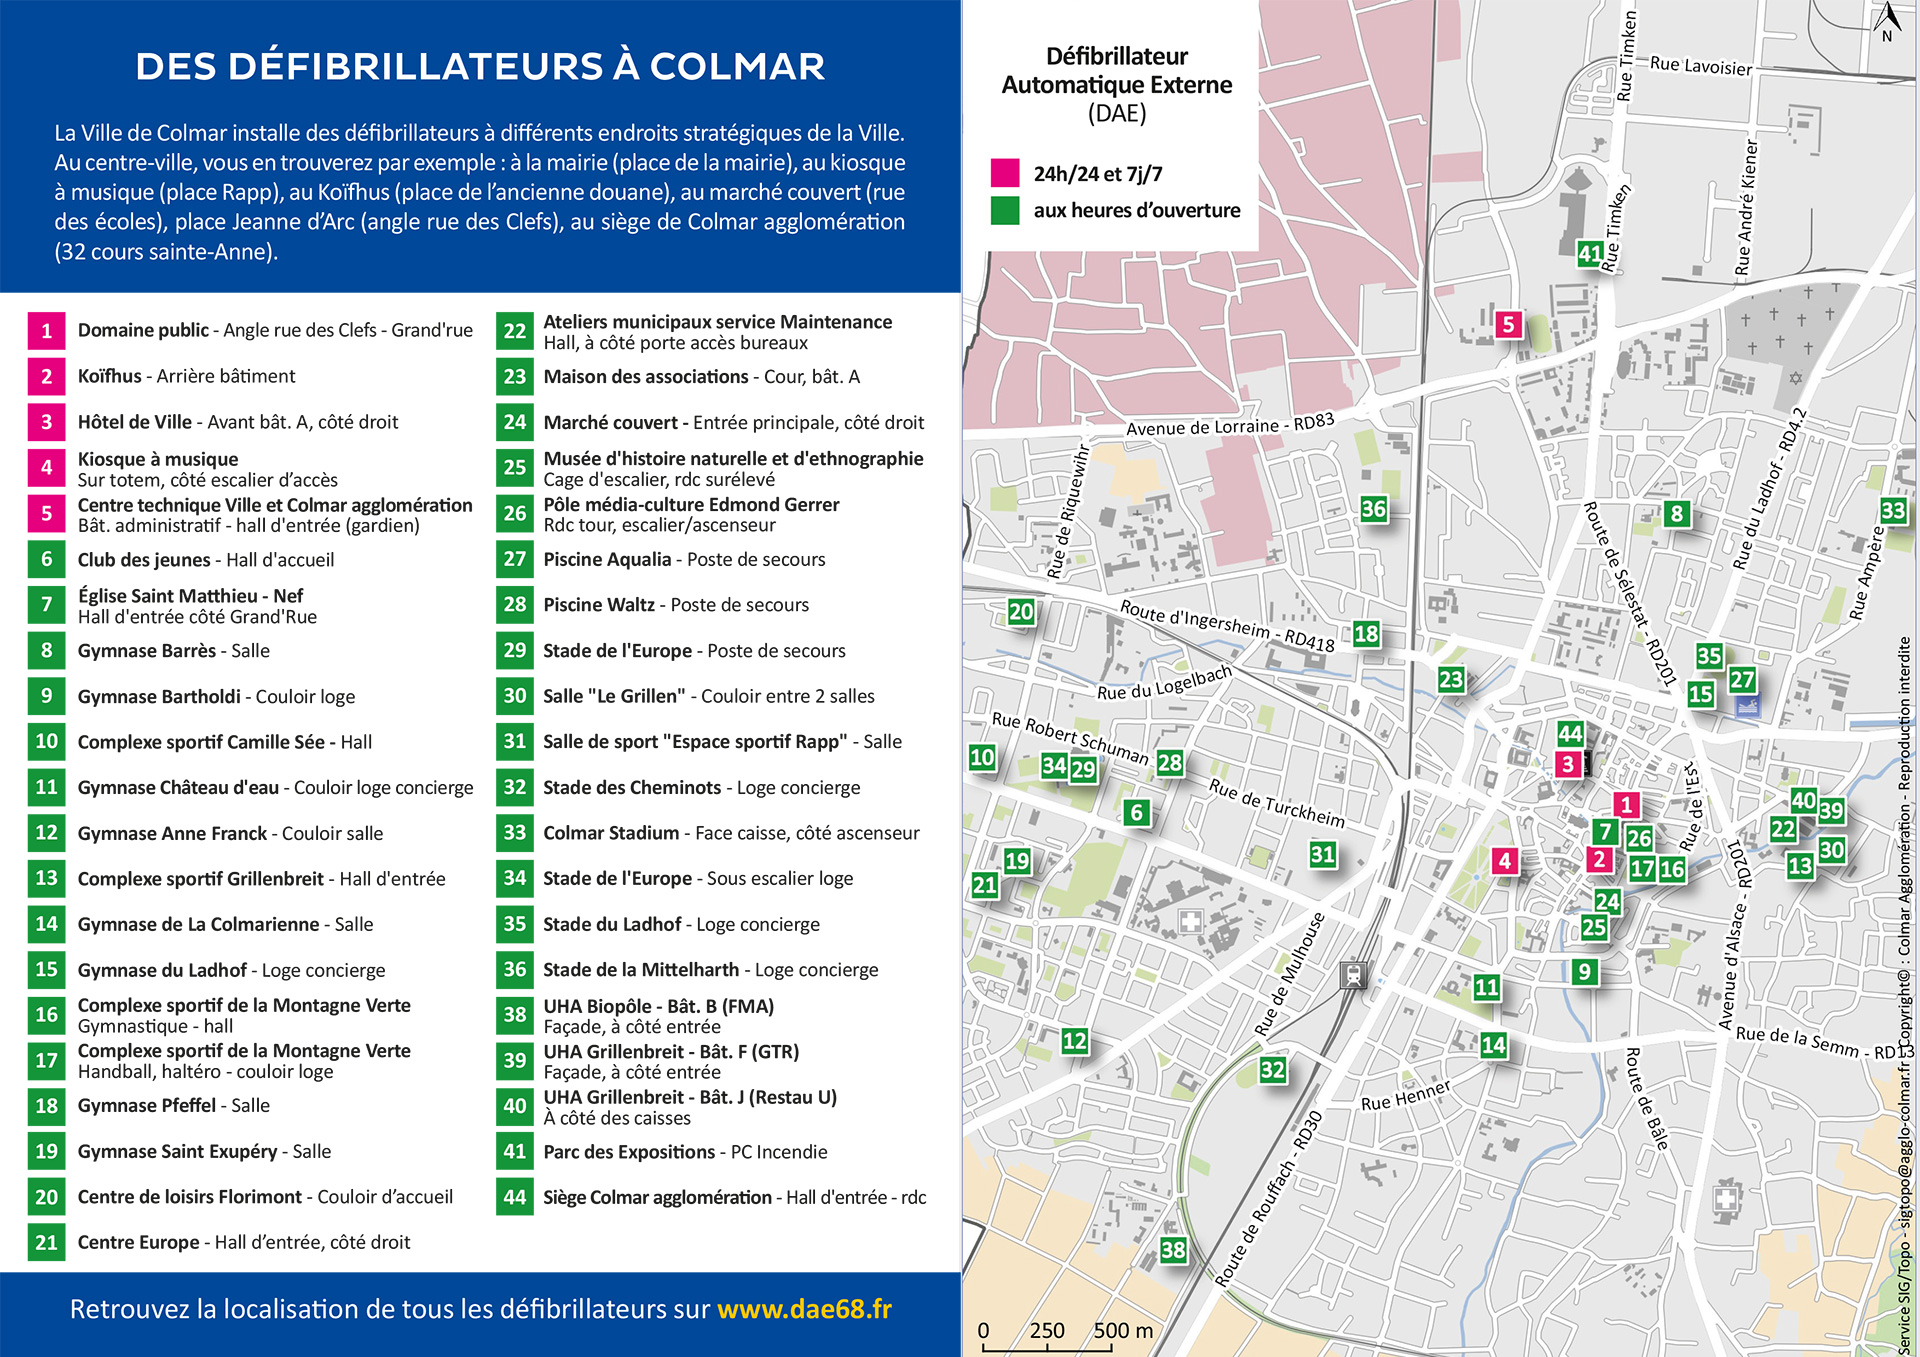 Plan des défibrillateur automatique externe (DAE) à Colmar